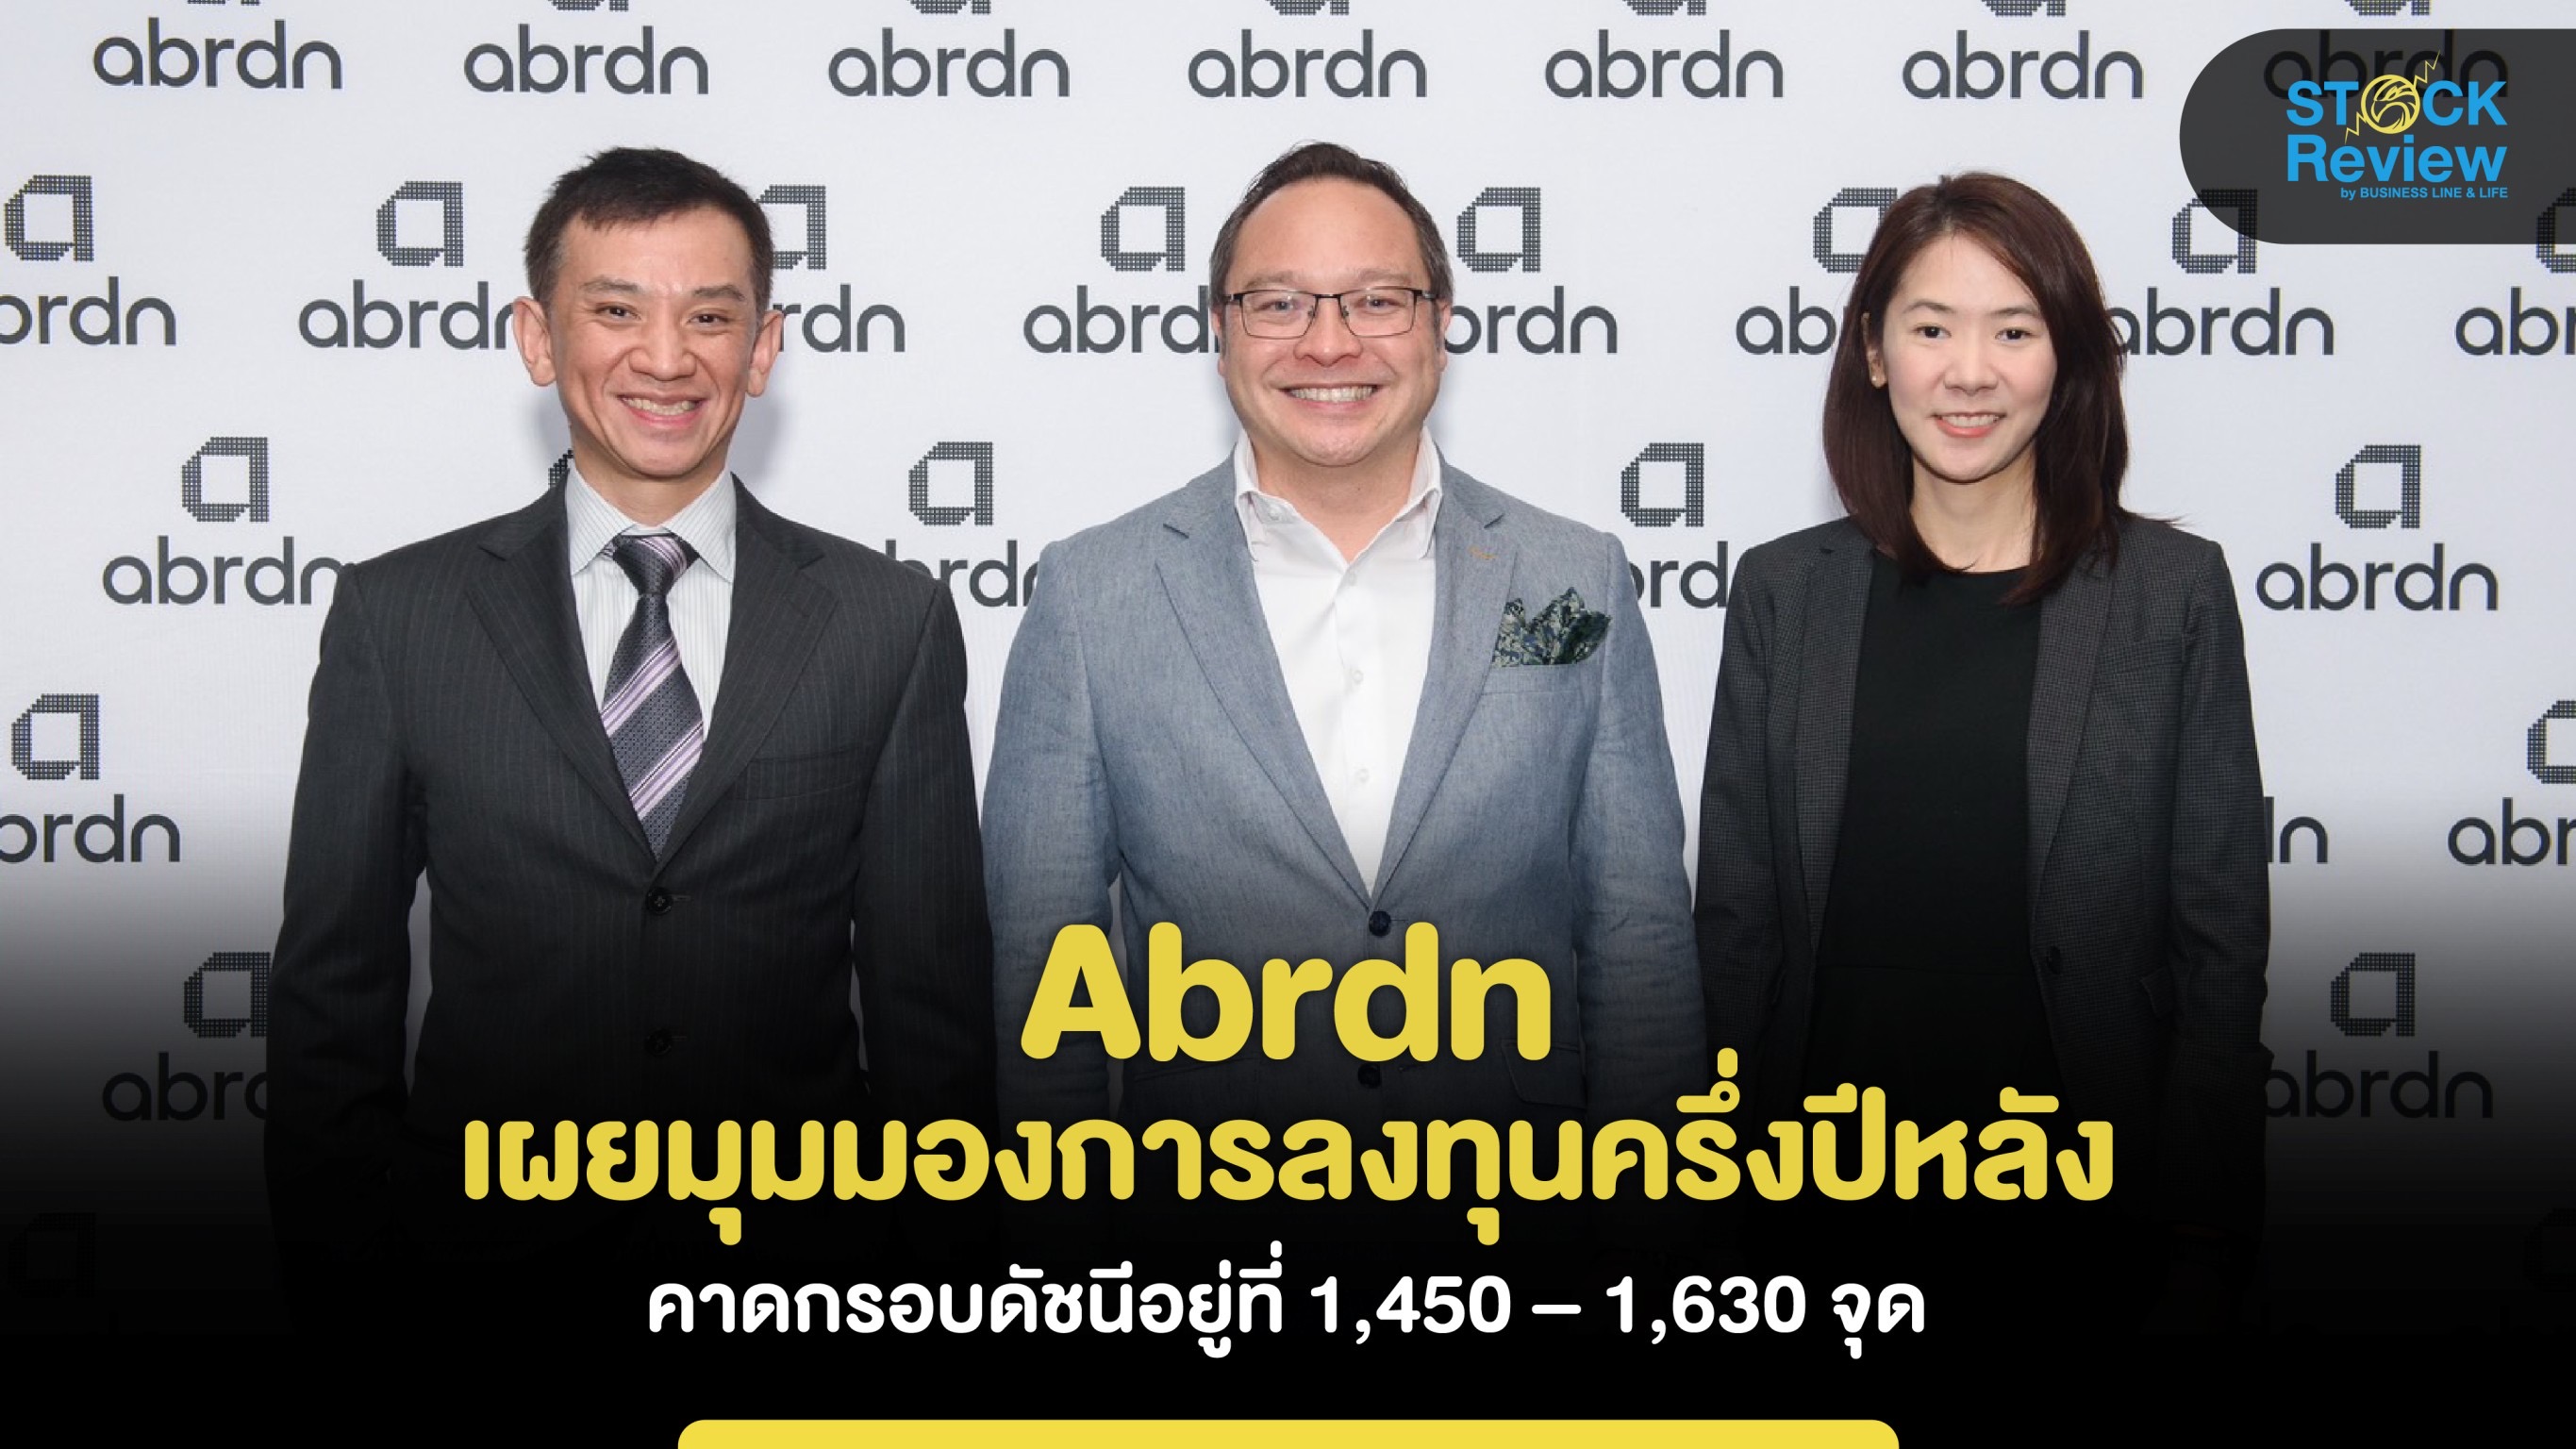 Abrdn  มองตลาดหุ้นไทยครึ่งปีหลังกรอบดัชนี 1,450-1,630 จุด